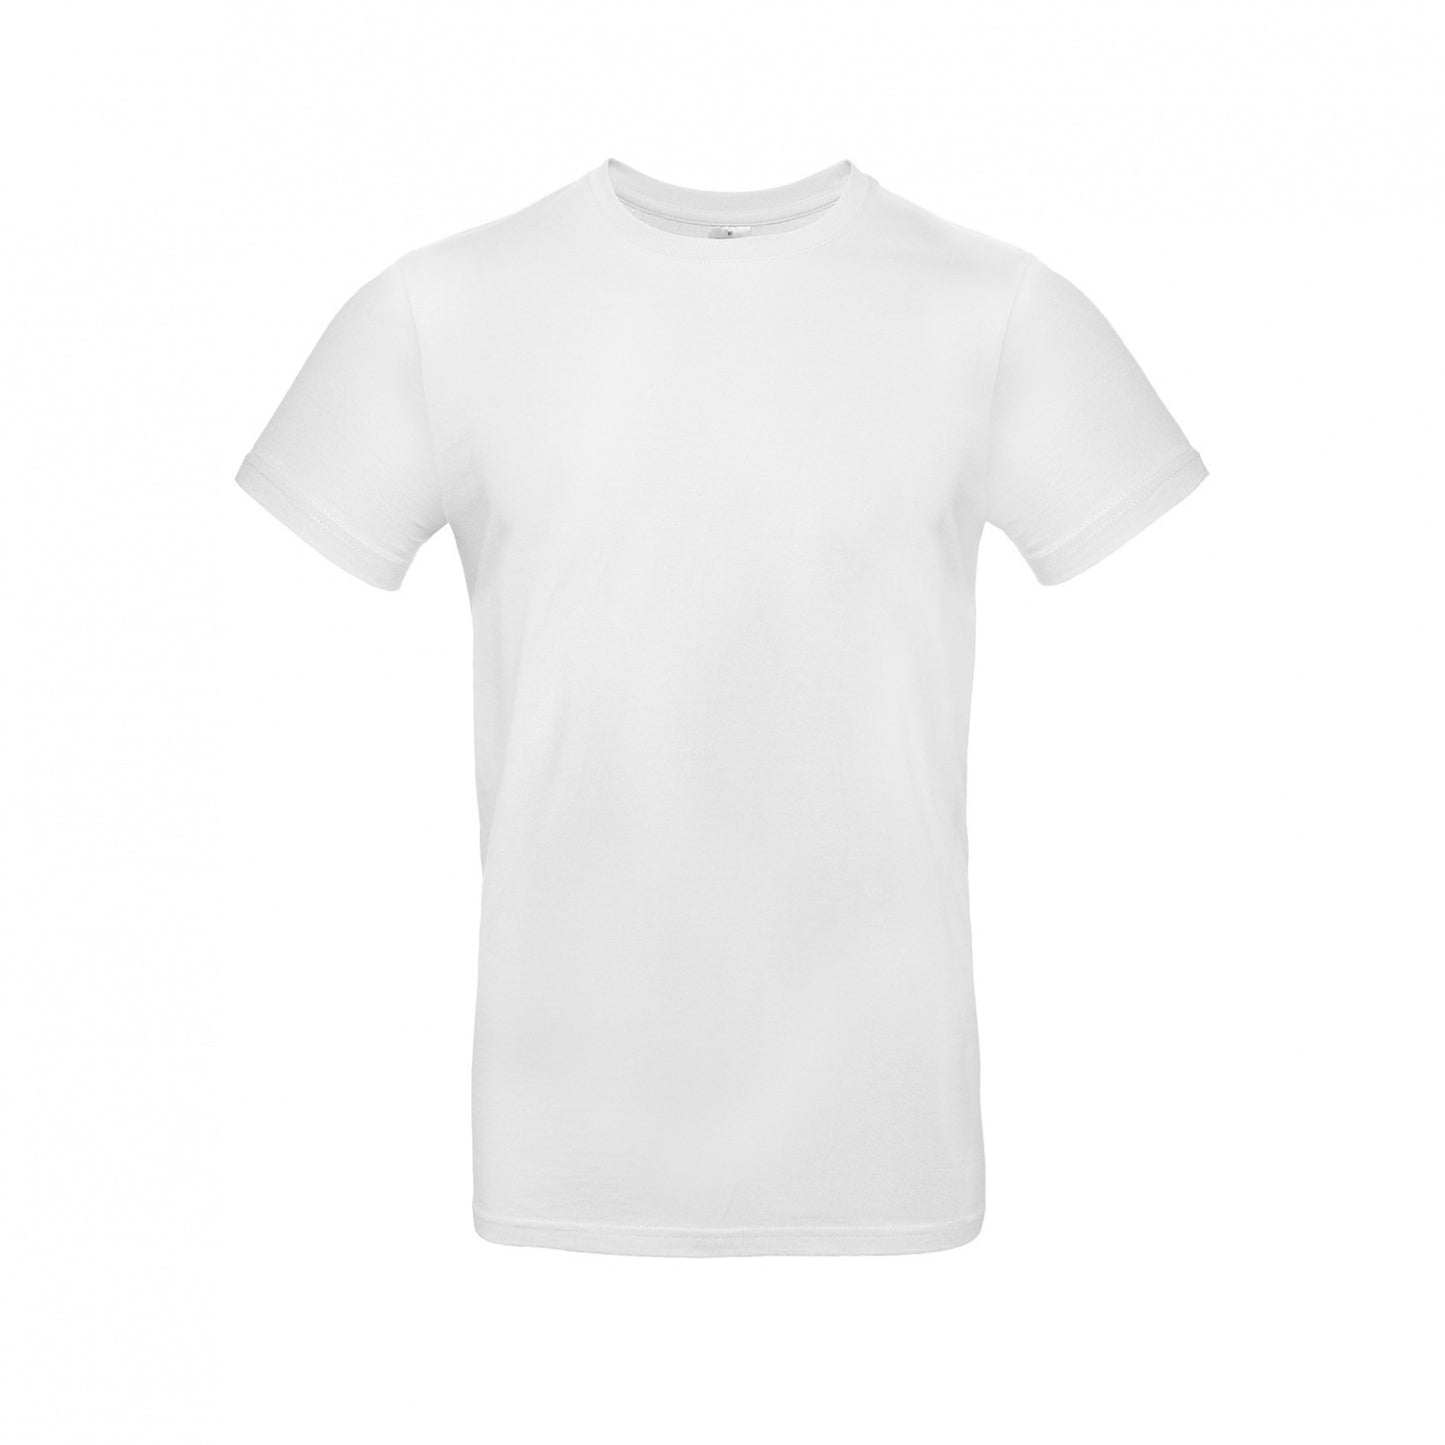 Personaliseer een geborduurde t-shirt (snelle levering)